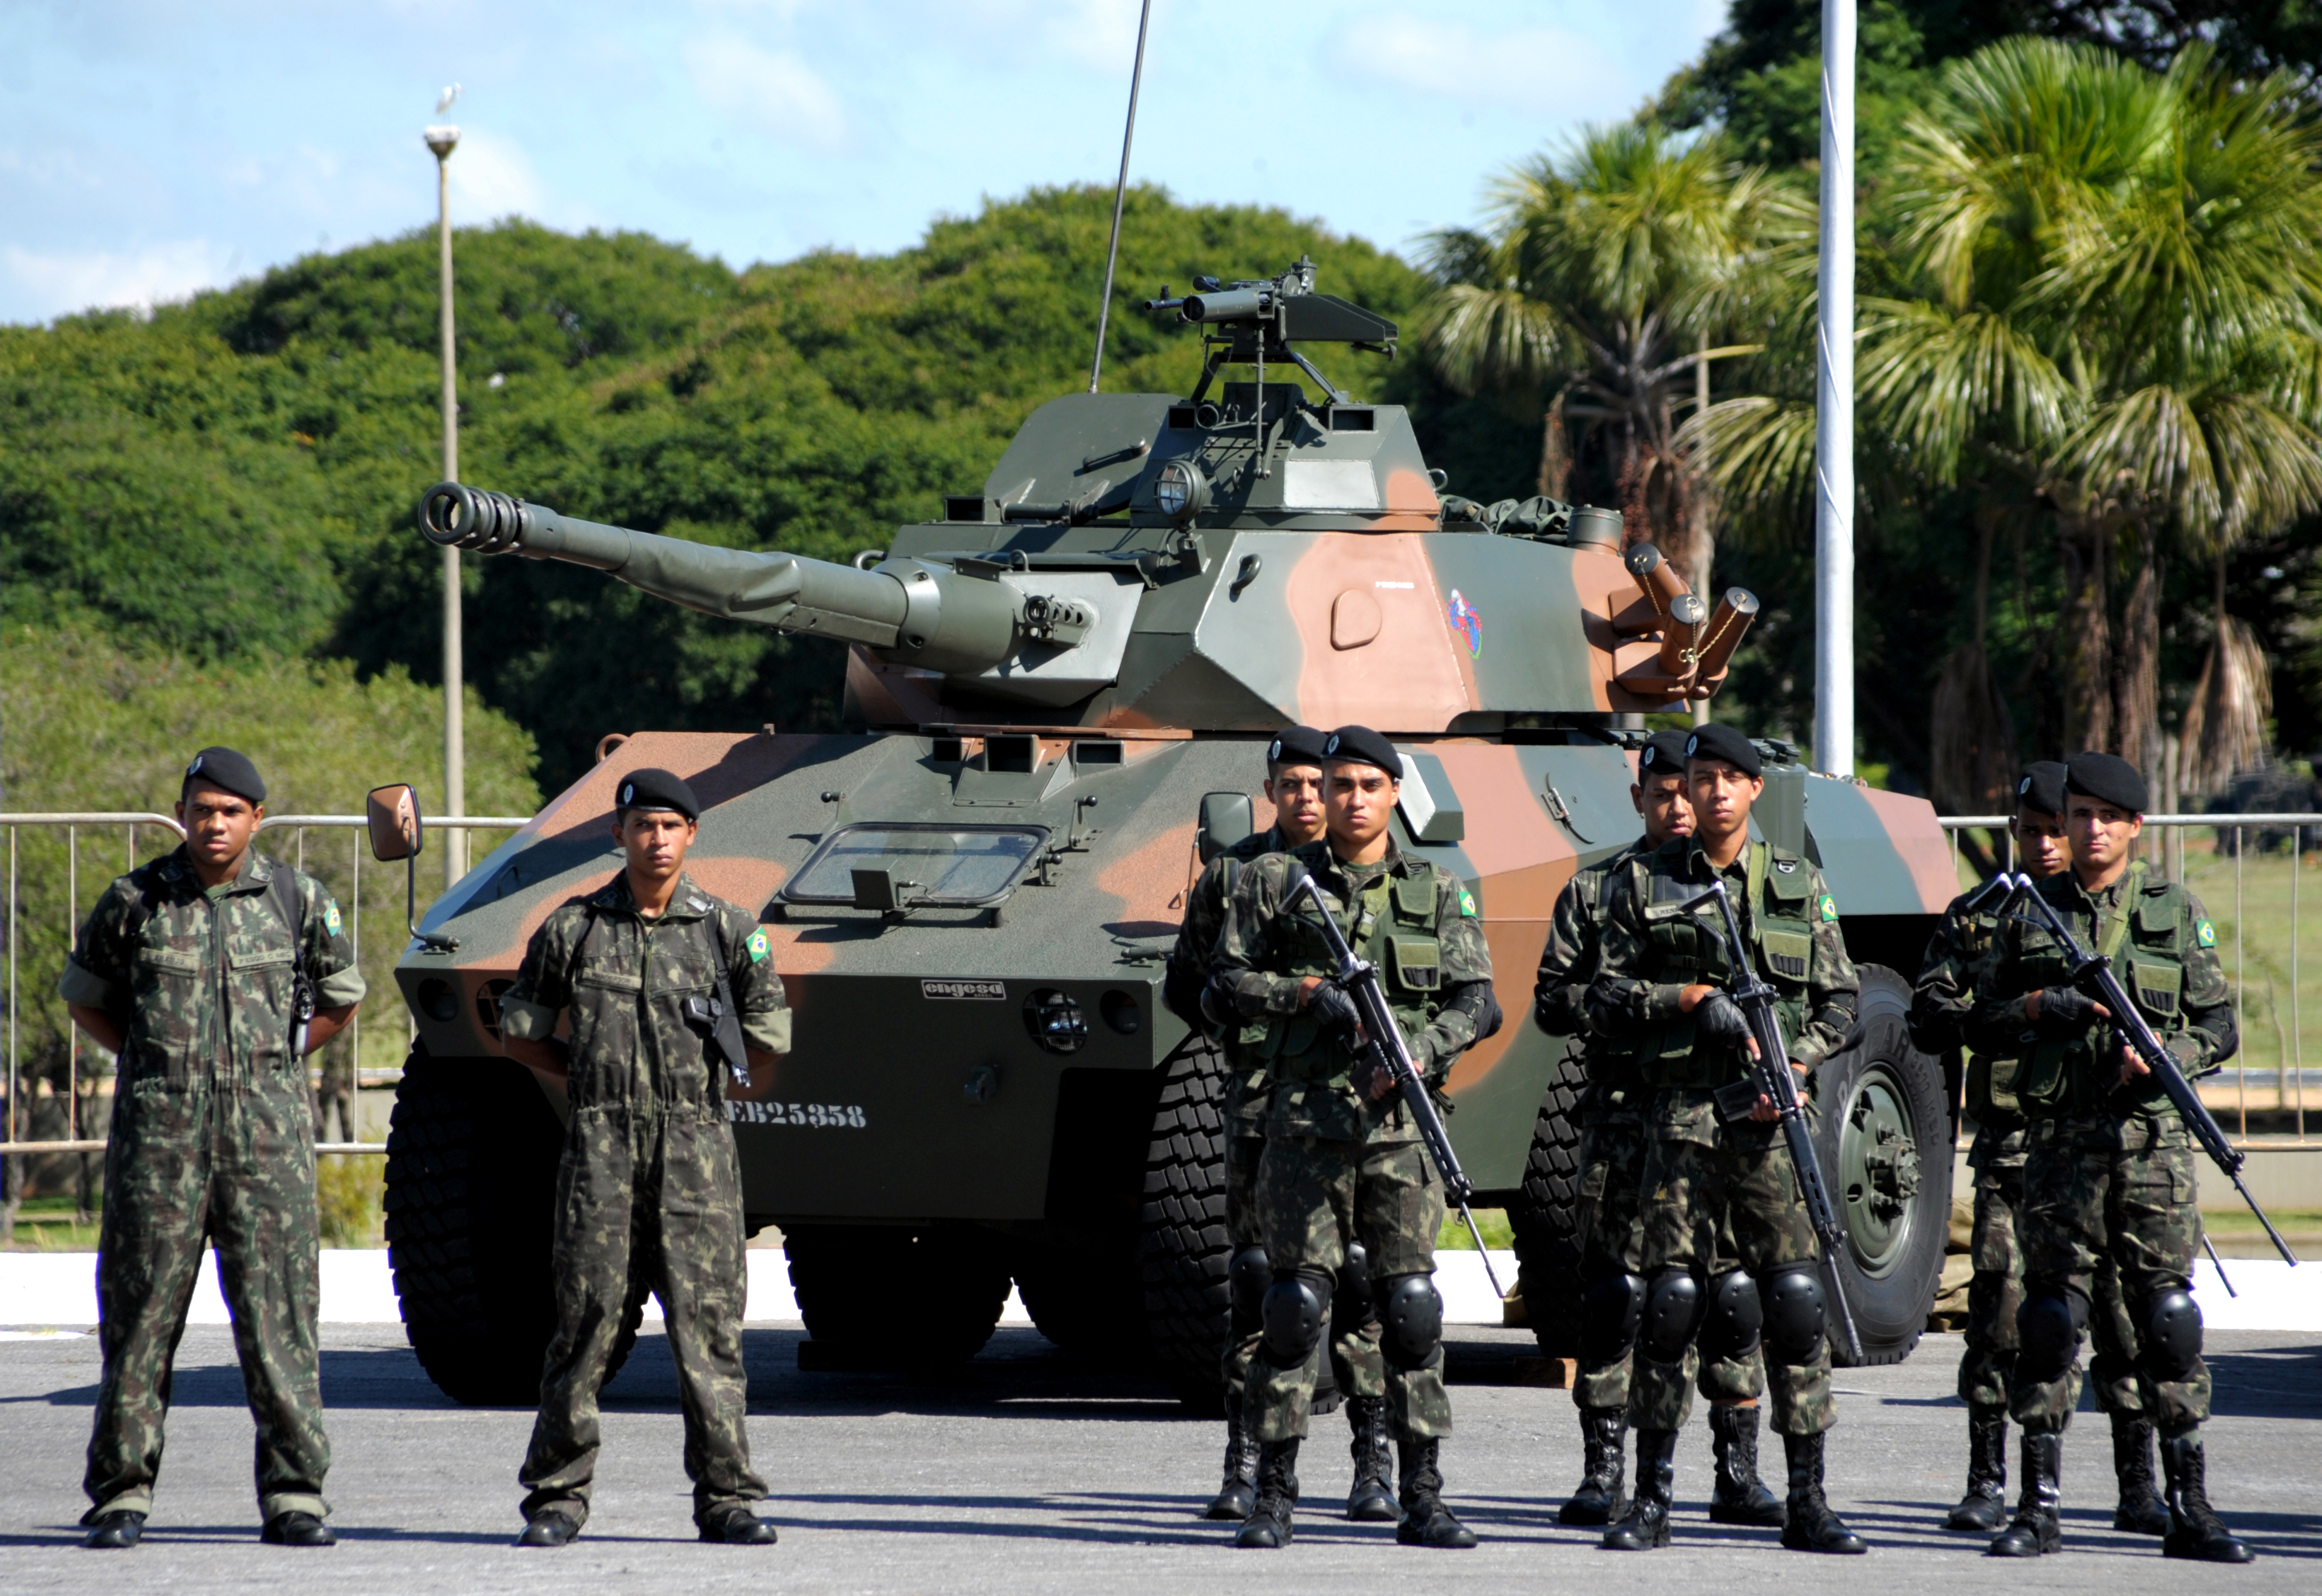 File:Comemoração do Dia do Exército Brasileiro (13855146674).jpg -  Wikimedia Commons